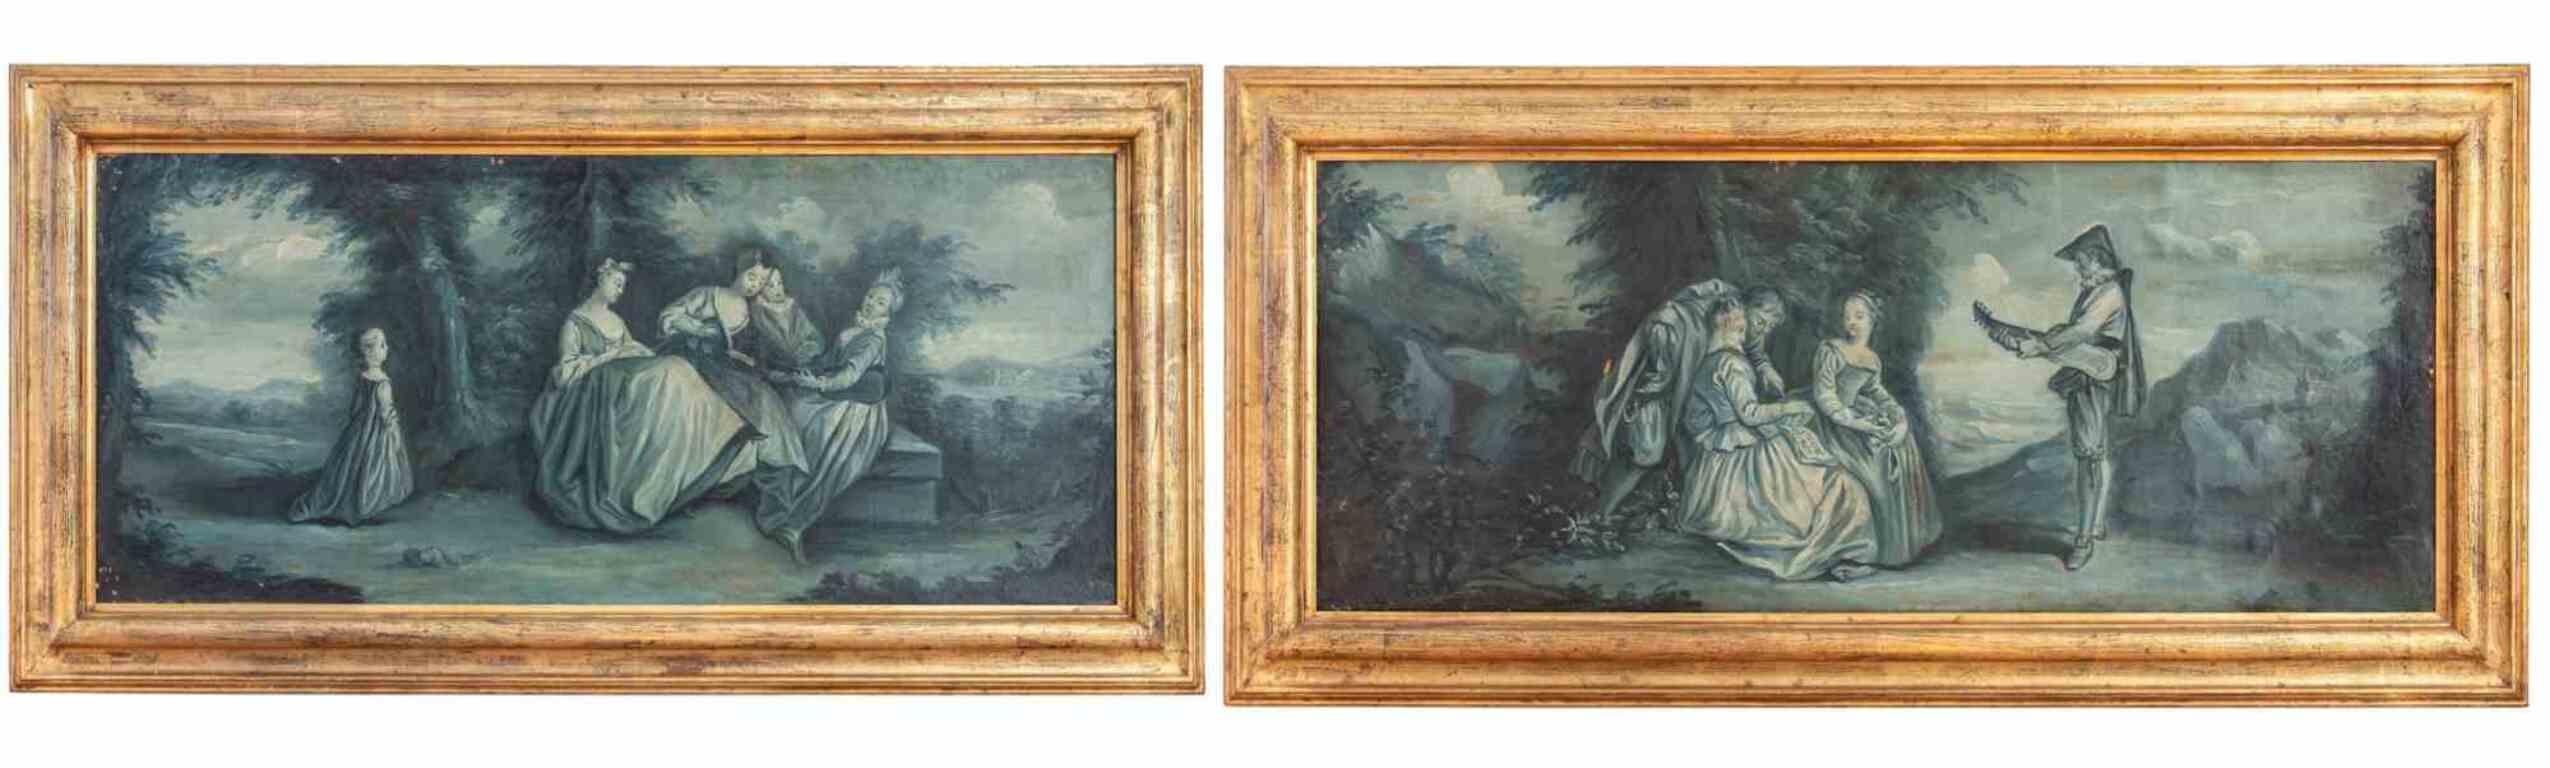 Paire de scènes californiennes - Huile sur toile - 18ème siècle